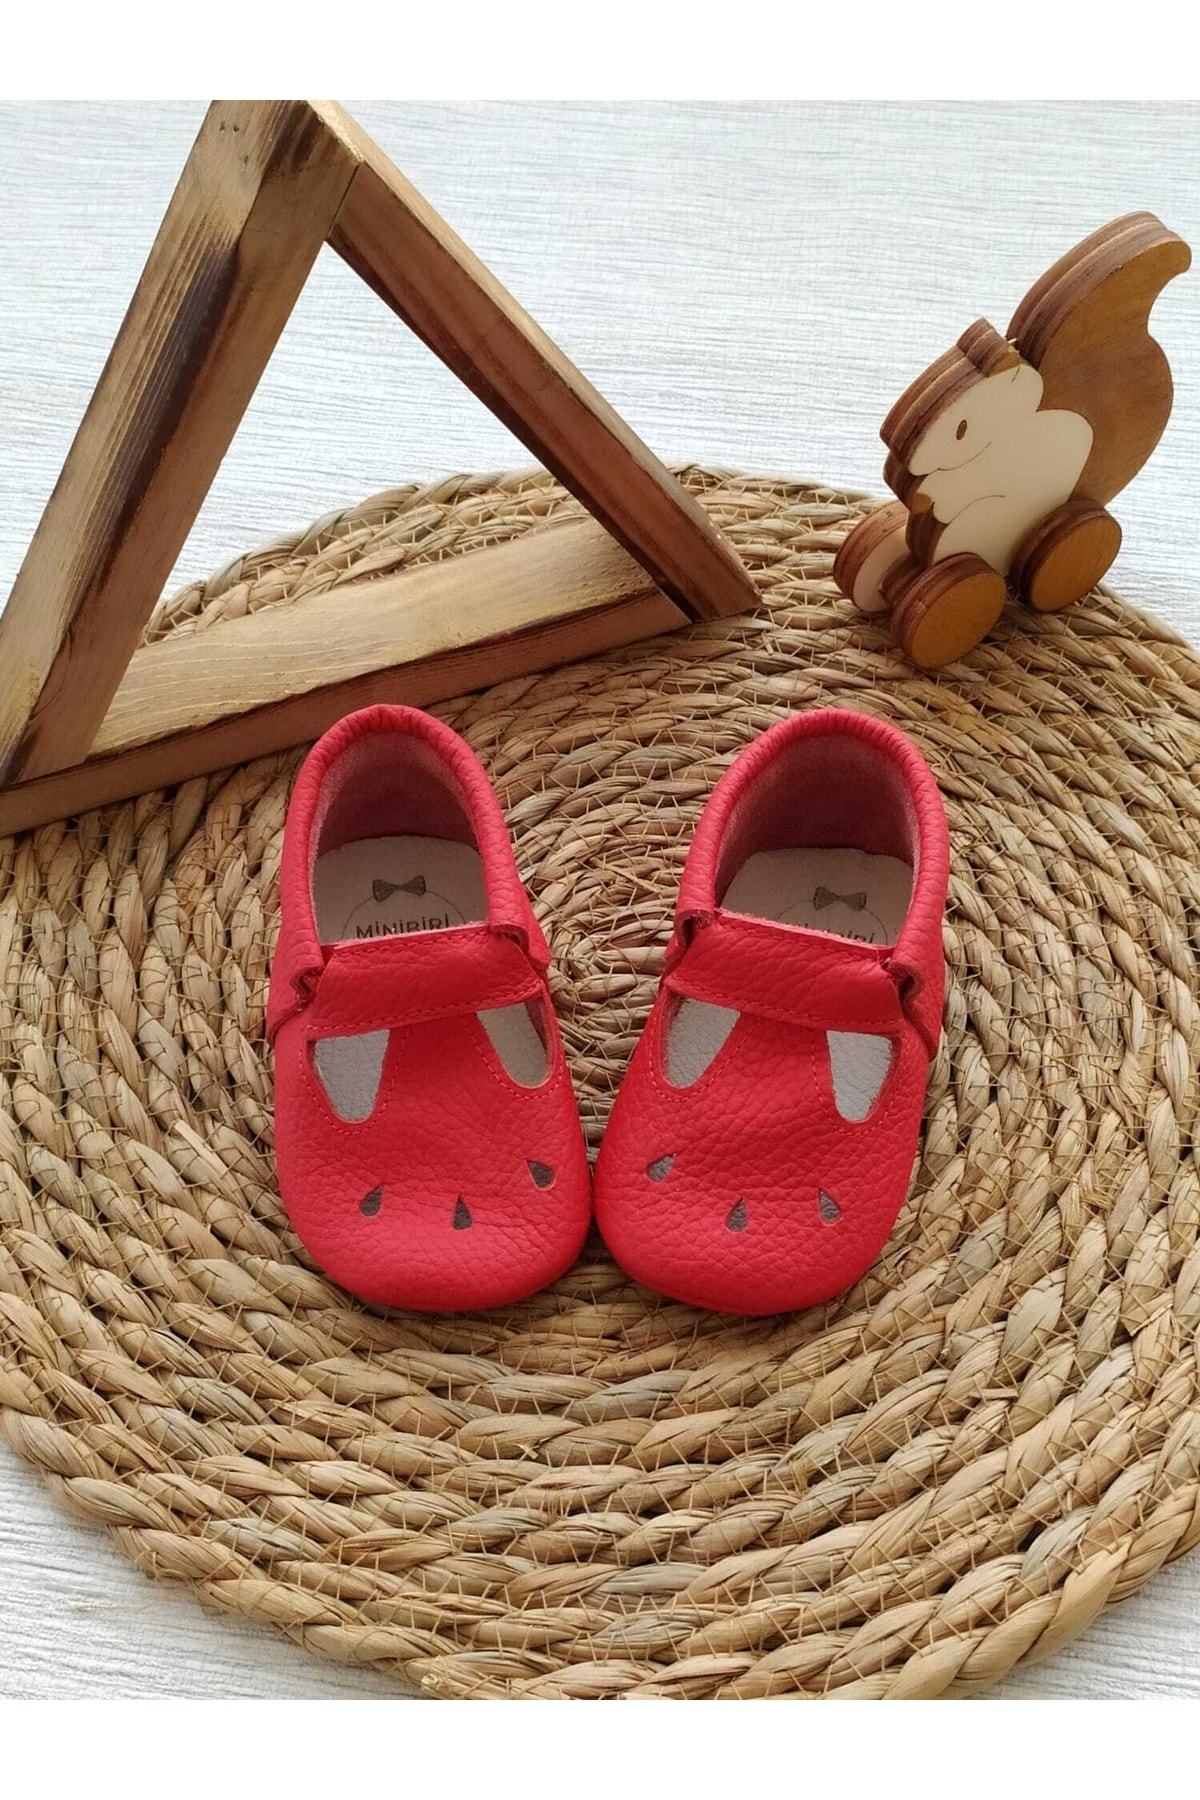 MİNİBİRİ Cosy Model Kırmızı Renk Hakiki Deri Bebek Makosen Patik Ilk Adım Ayakkabısı